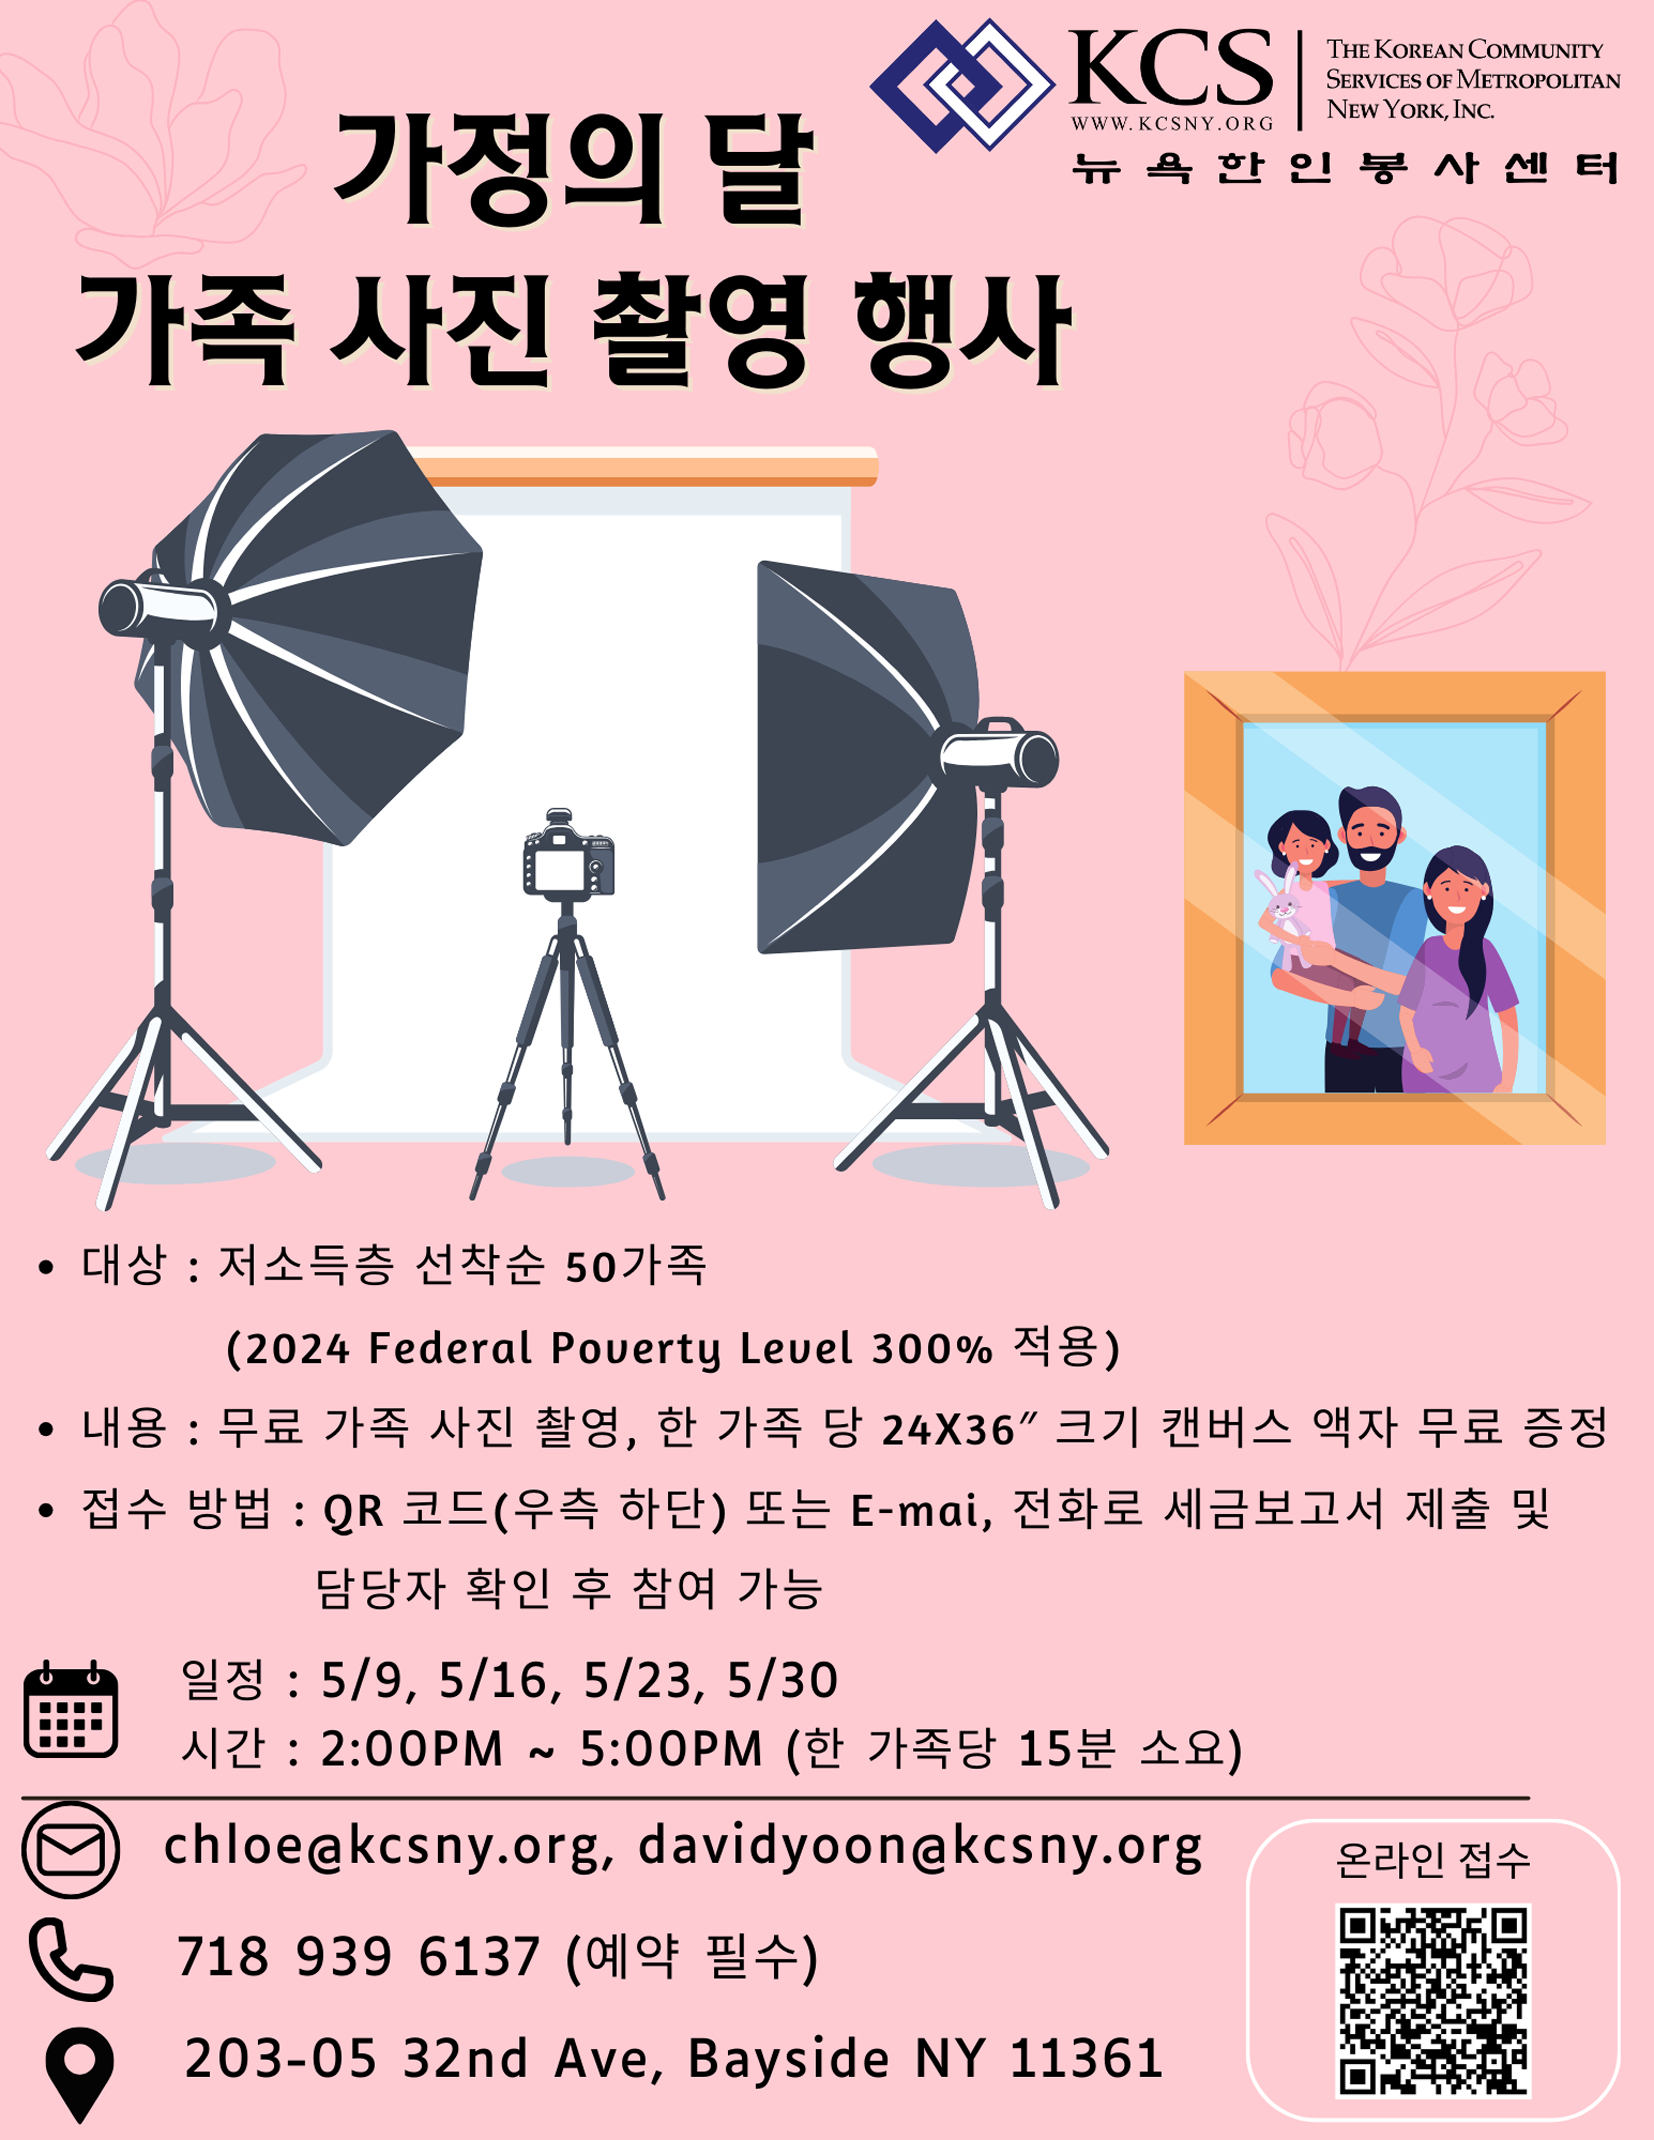 KCS 가정의 달 가족사진 촬영 이벤트 홍보 포스터. [사진 KCS] 